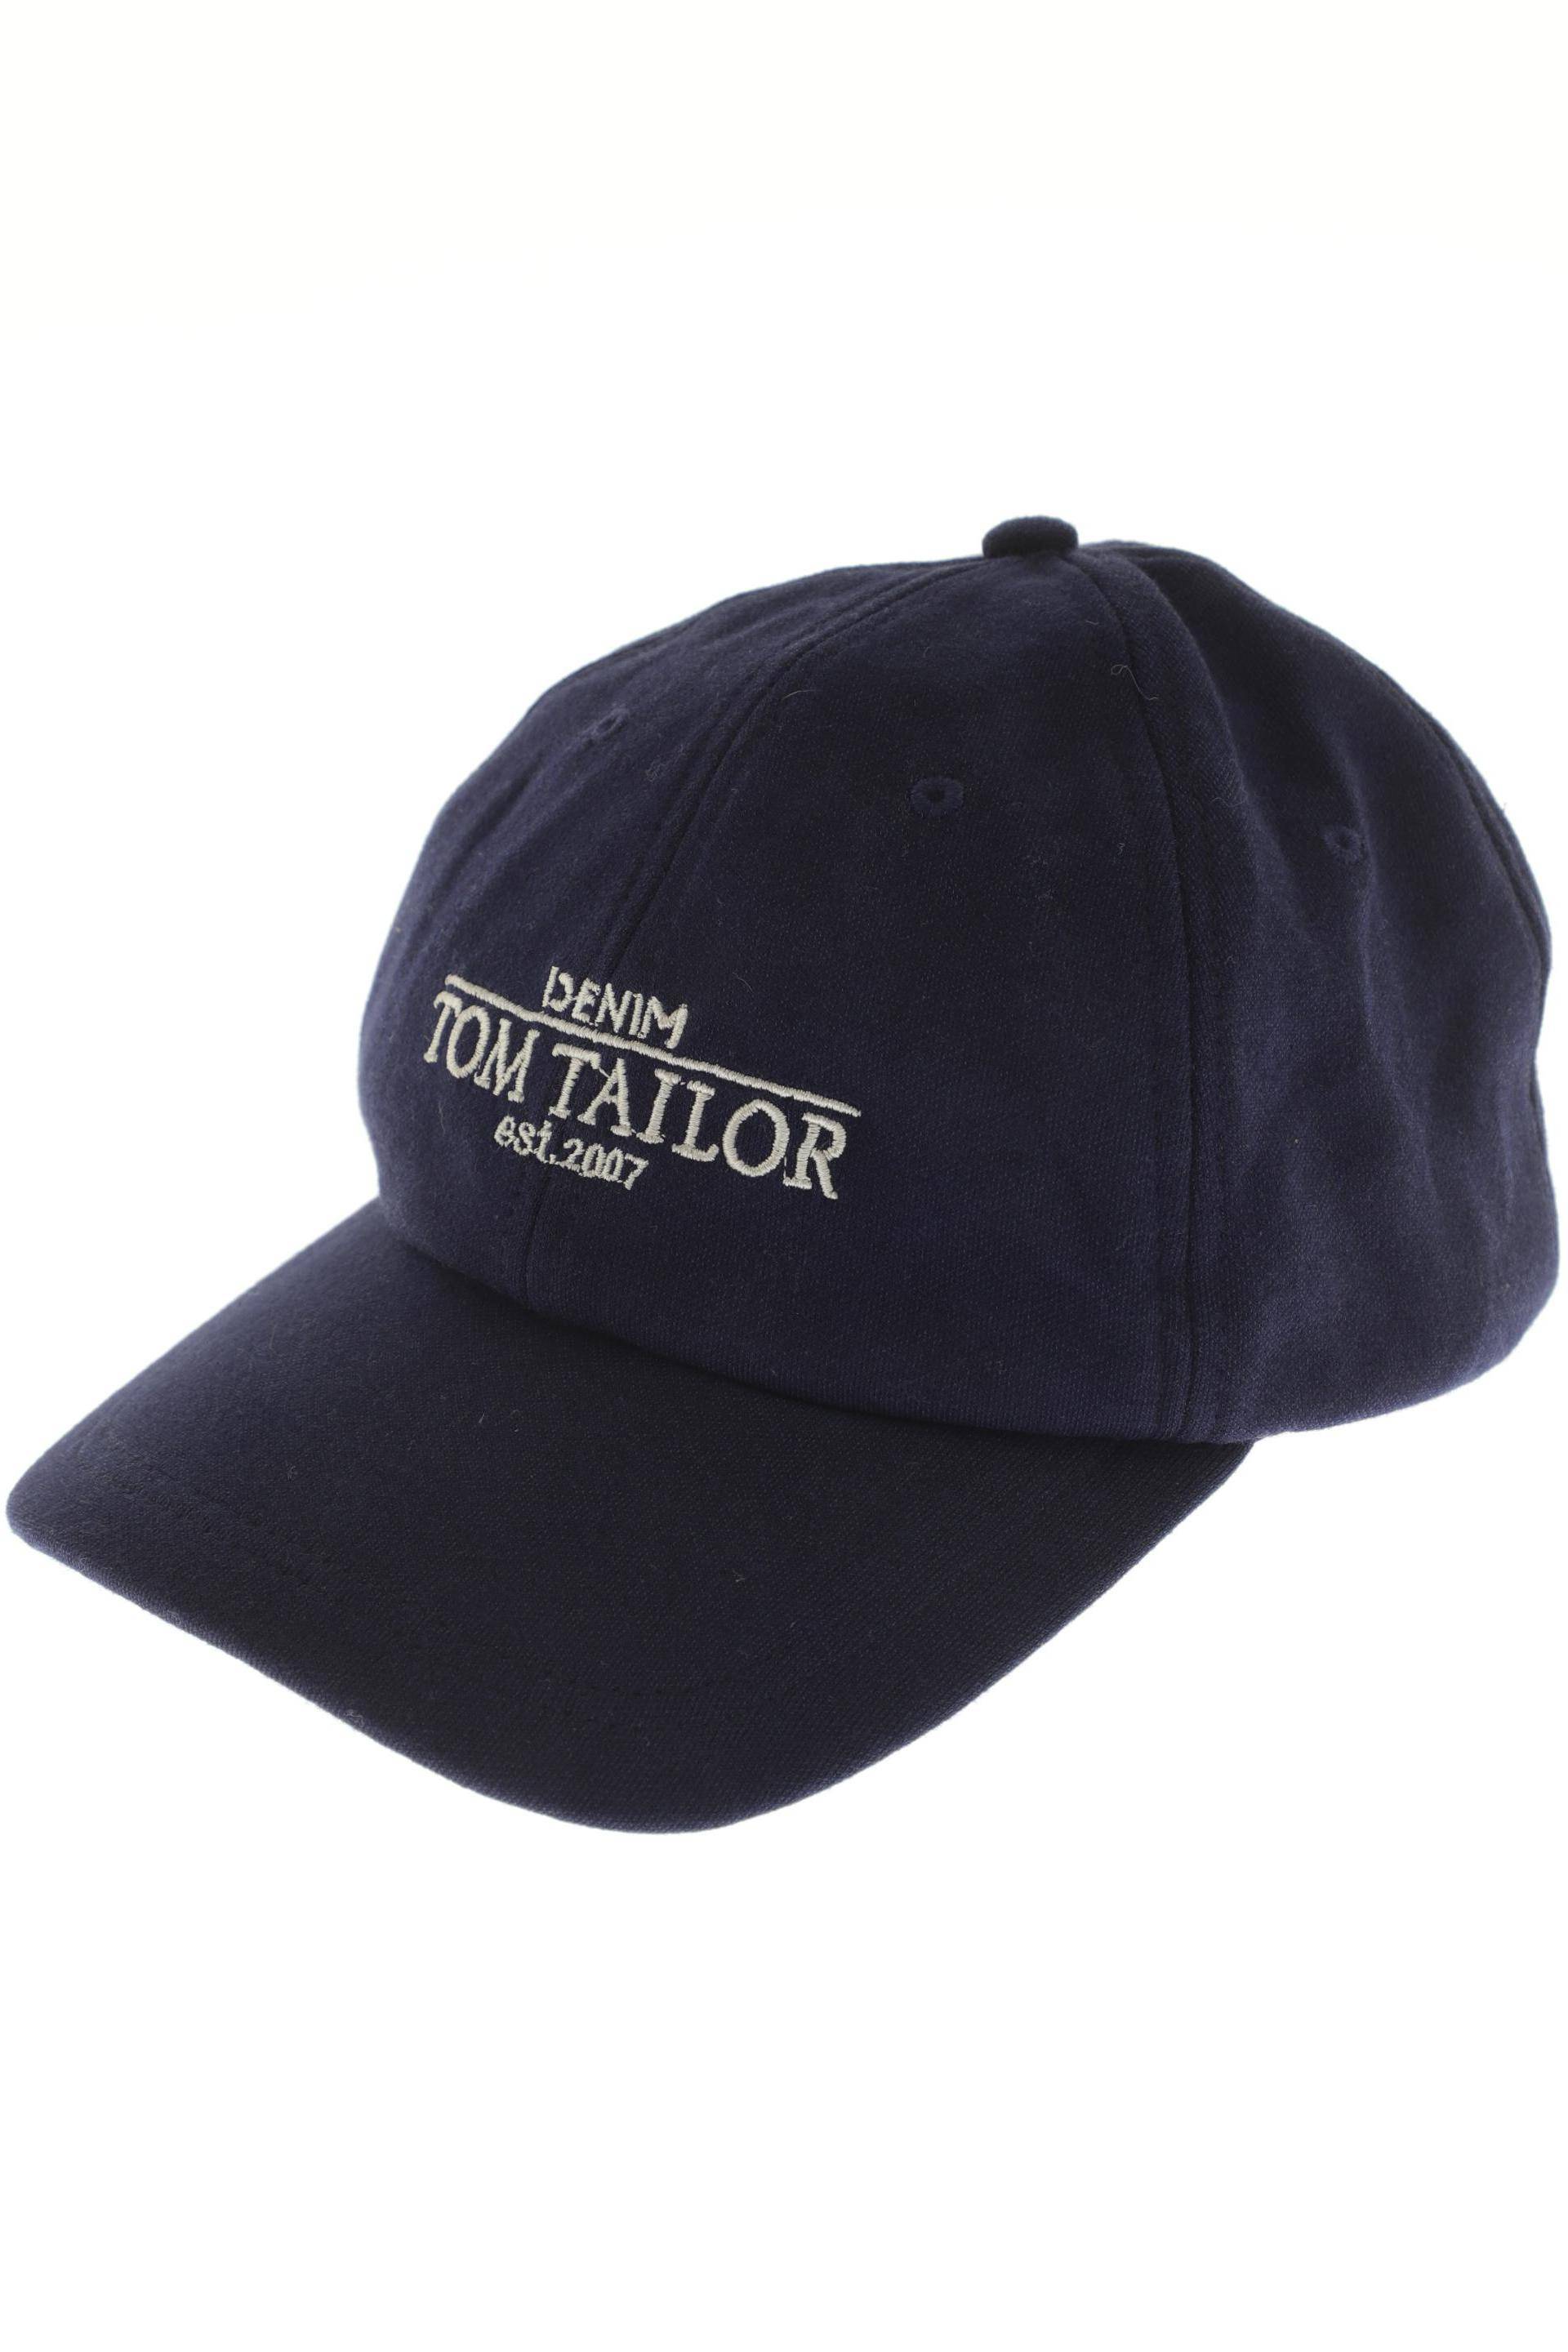 TOM TAILOR Denim Damen Hut/Mütze, marineblau von Tom Tailor Denim